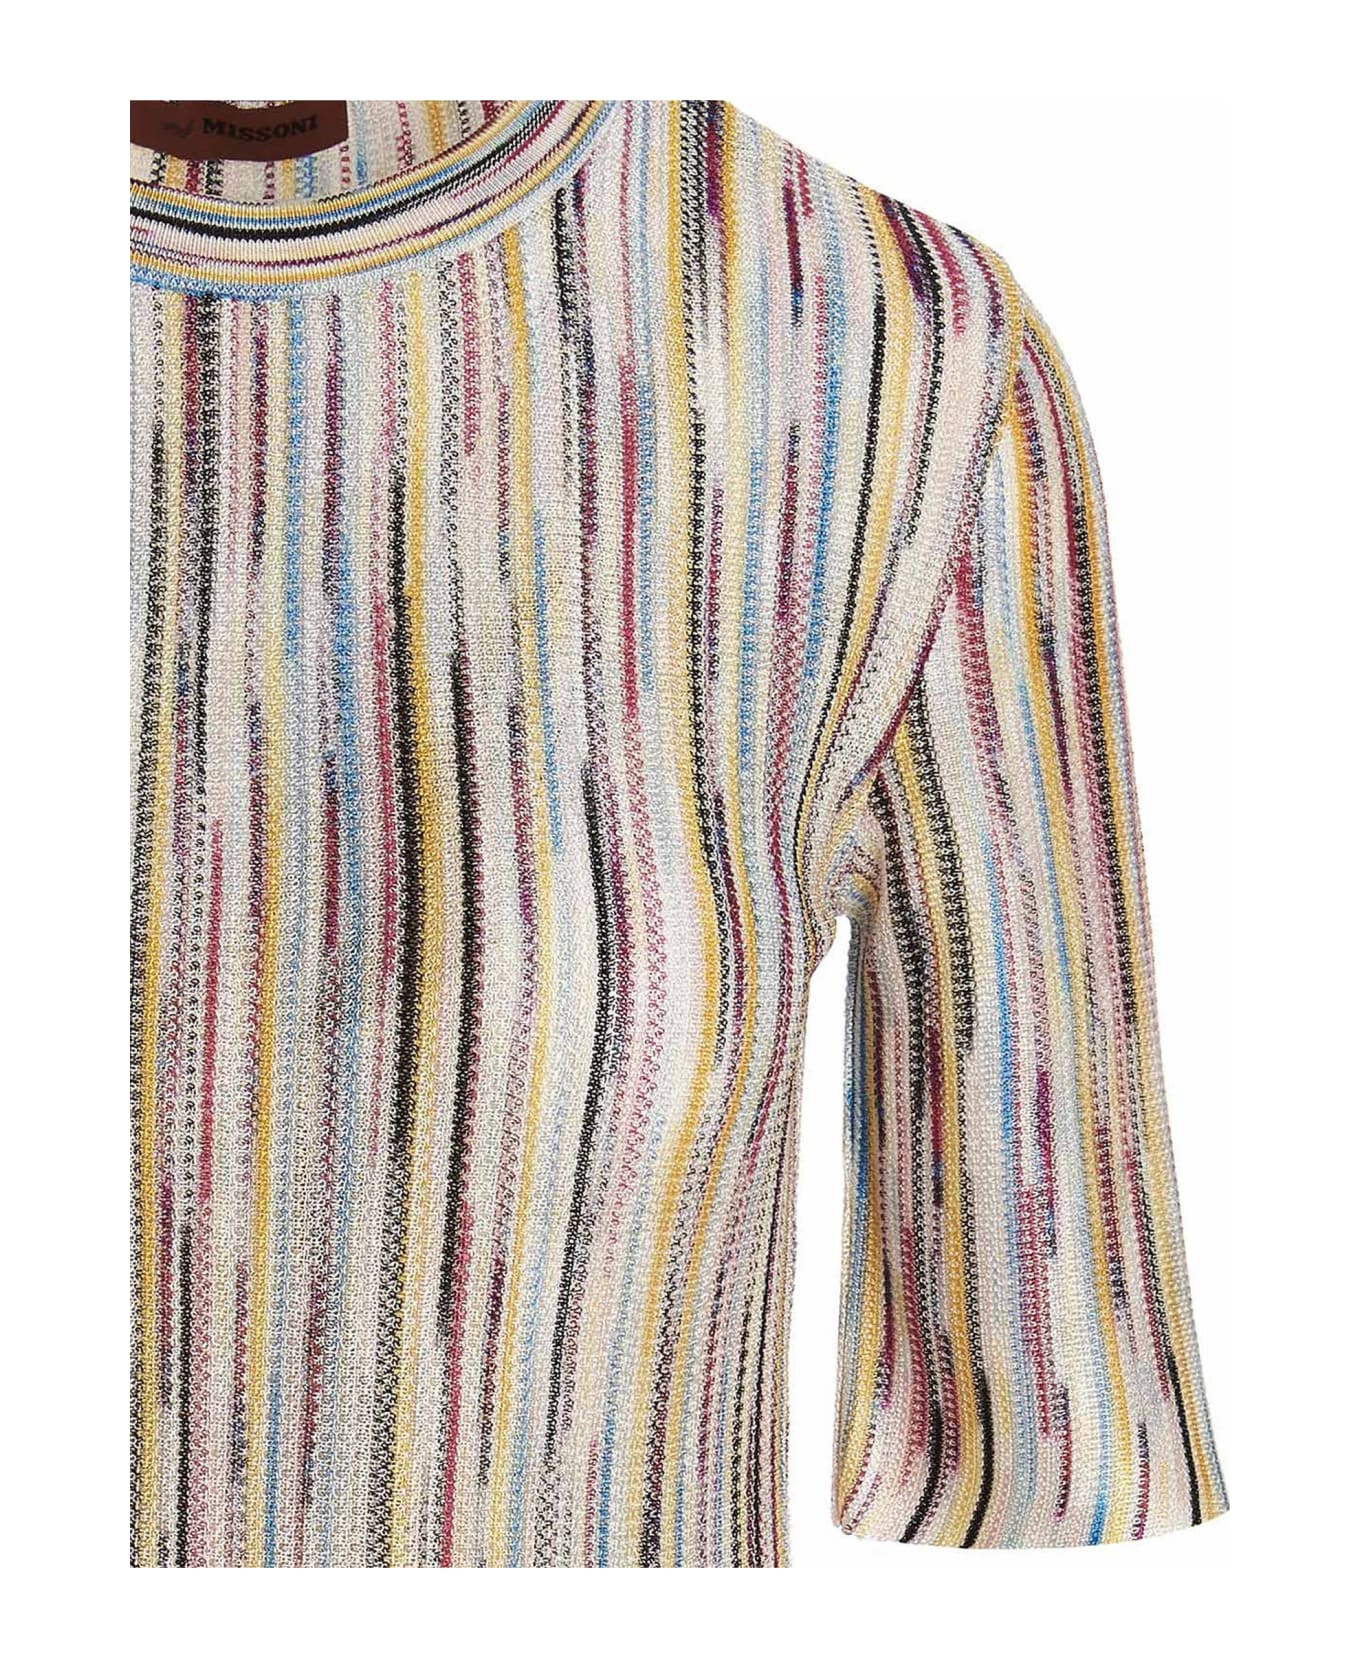 Missoni Multicolor Striped Dress - Multicolor